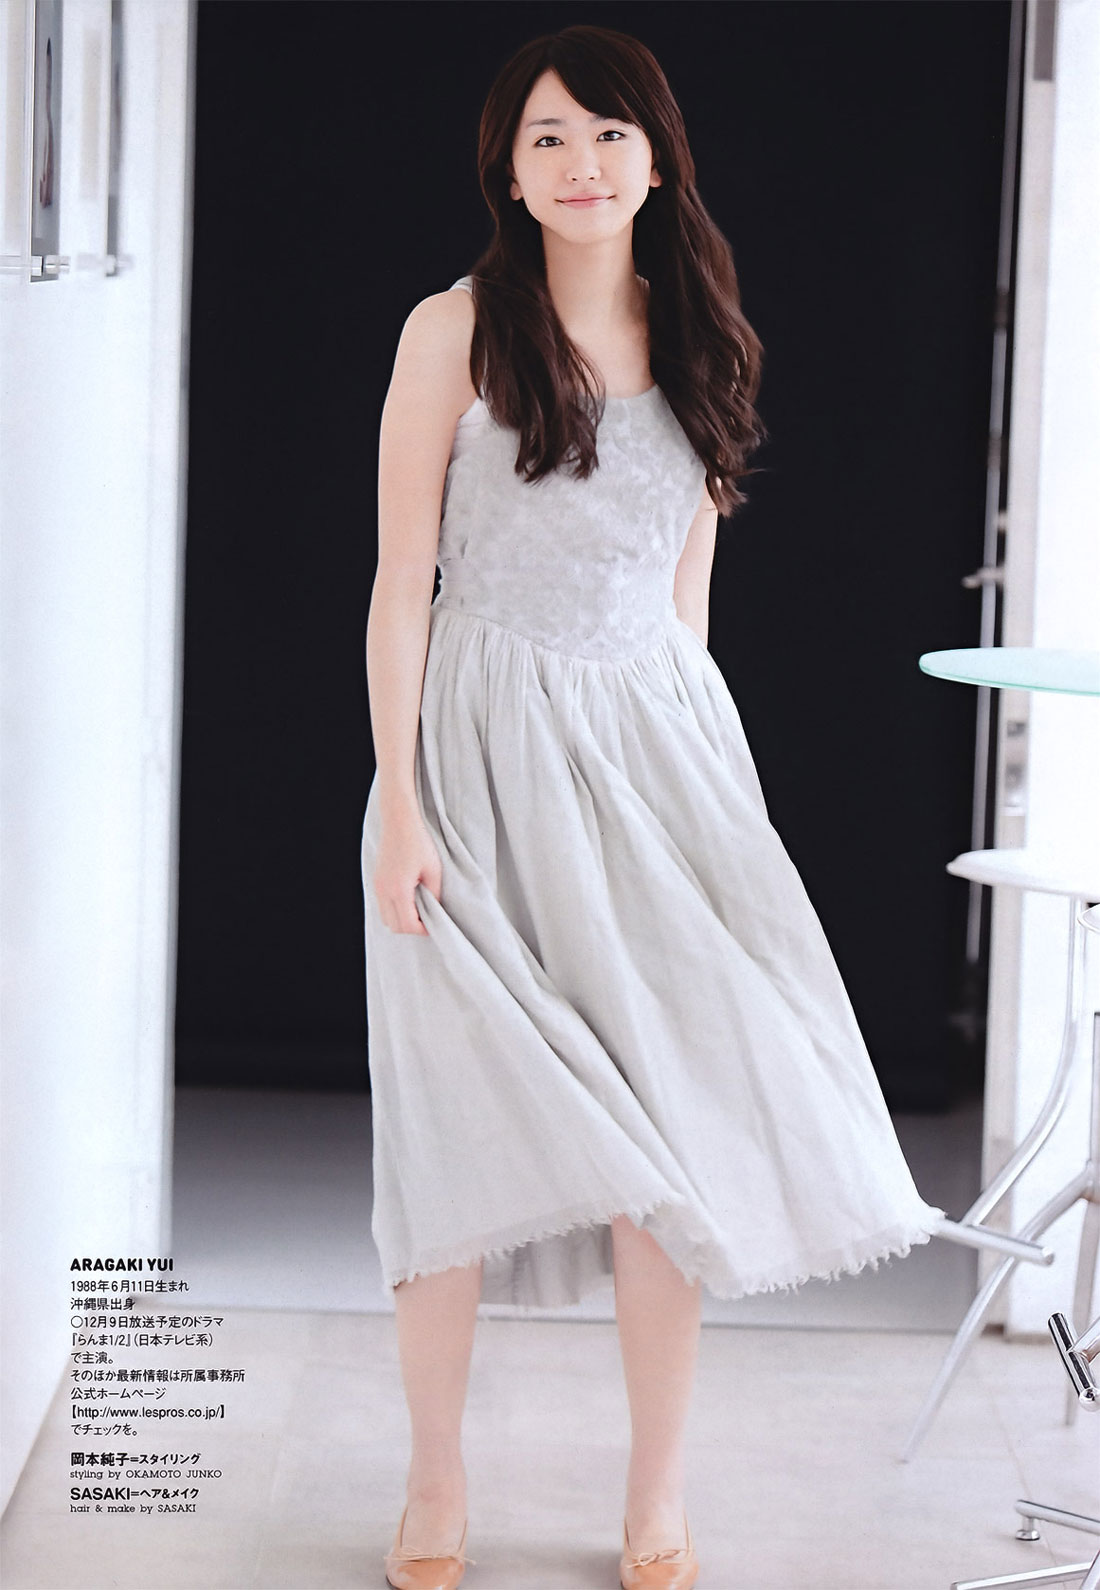 Yui Aragaki WPB Japanese Magazine